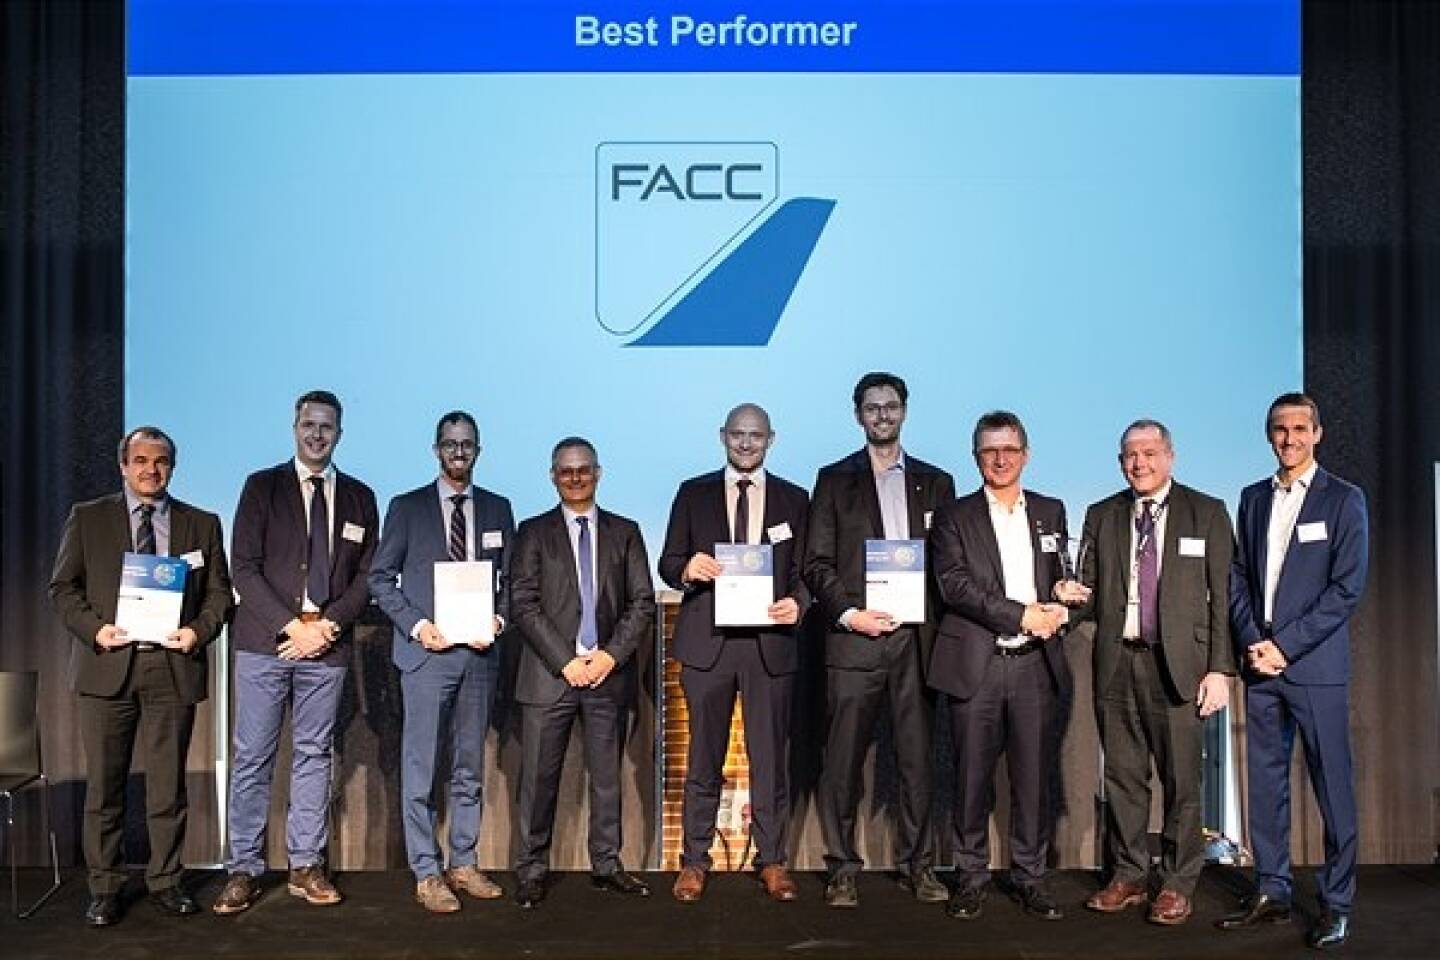 Bereits zum zweiten Mal in Folge ist FACC von Airbus mit einem „Supplier Award“ ausgezeichnet worden. Der europäische Flugzeughersteller ernannte FACC zum „Best Perfomer“ und würdigte damit FACC als zuverlässigen Technologiepartner der Airbus Gruppe. Der Preis wurde vor kurzem von Airbus in Toulouse übergeben. Credit: FACC